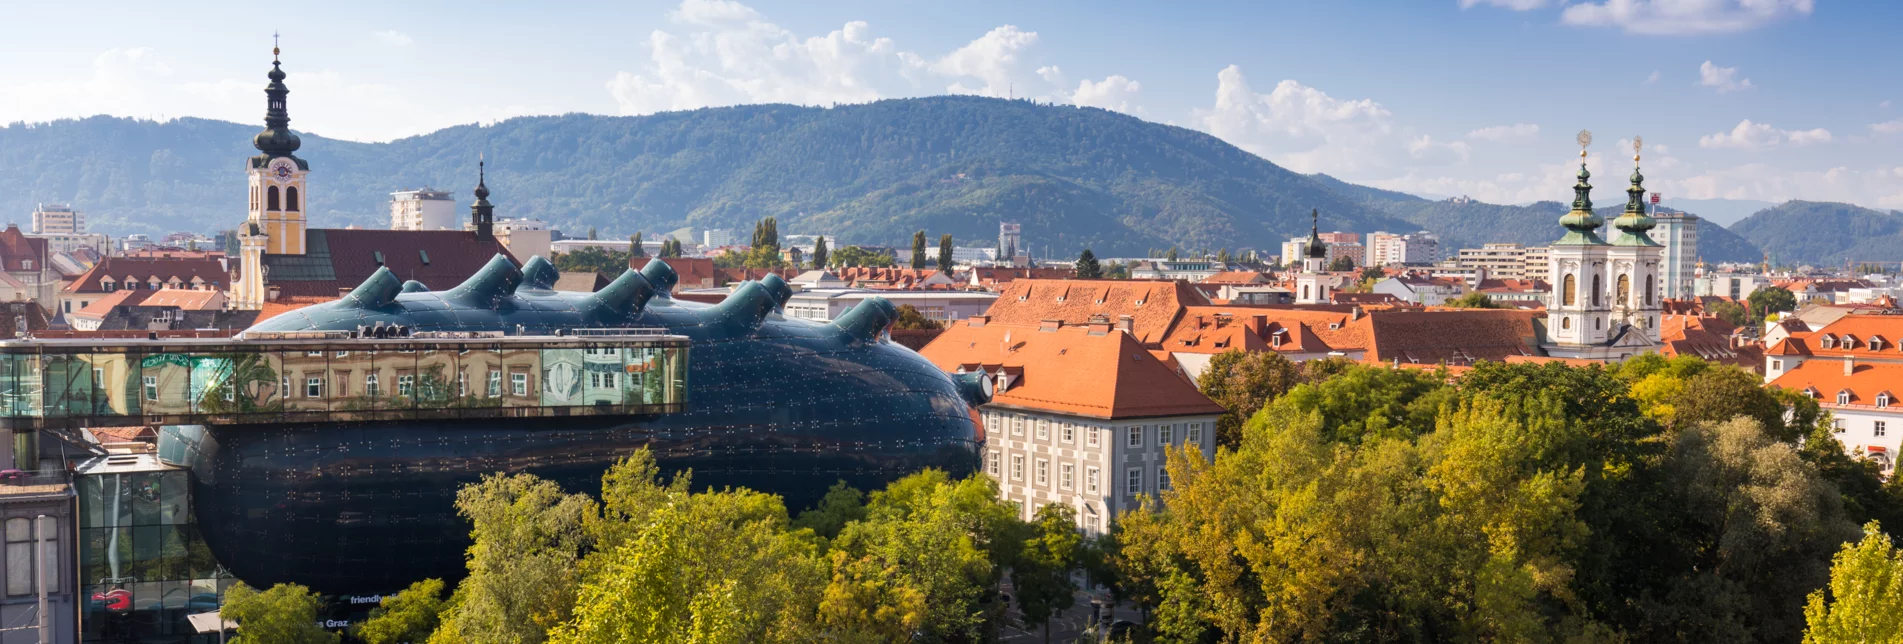 City of Graz  | © Graz Tourism | Harry Schiffer